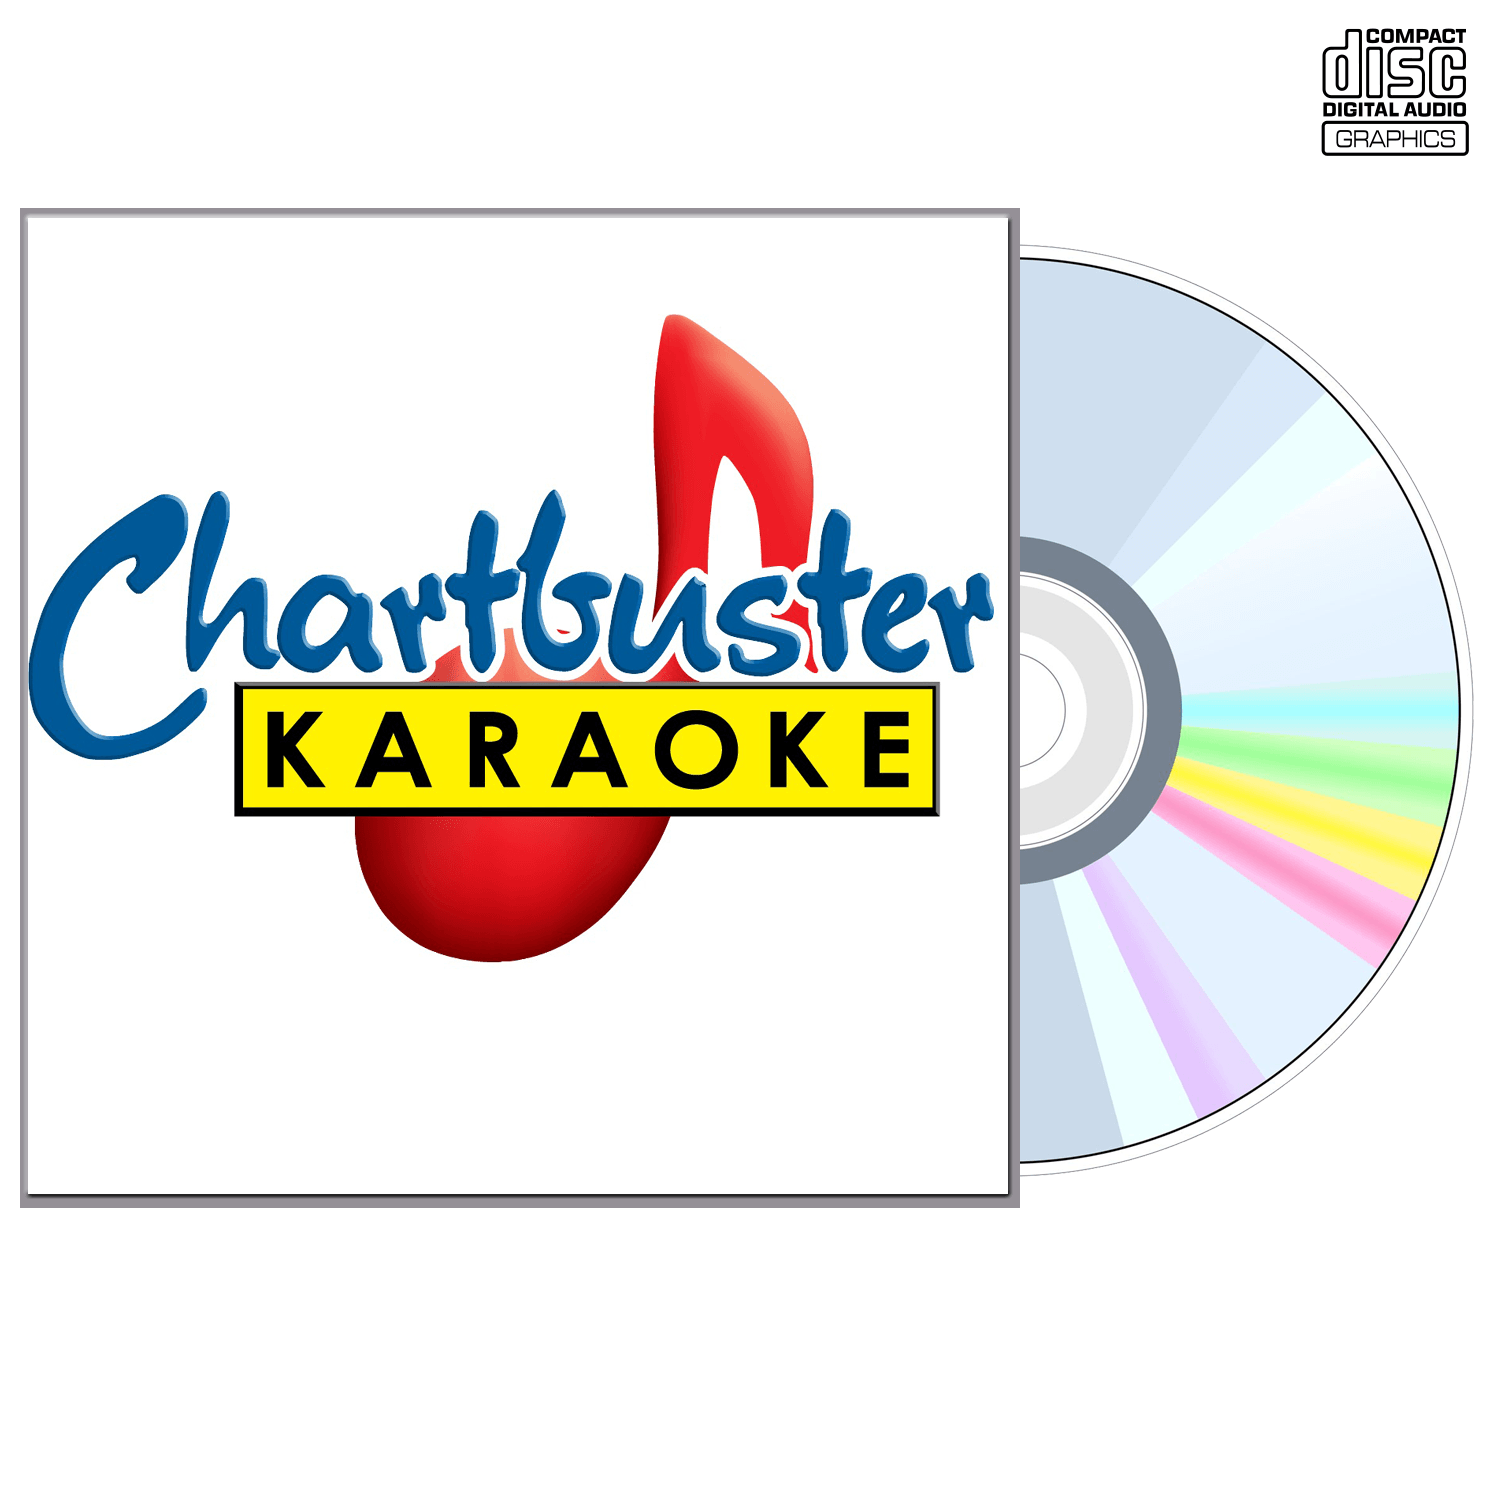 Amy Dalley - CD+G - Chartbuster Karaoke - Karaoke Home Entertainment